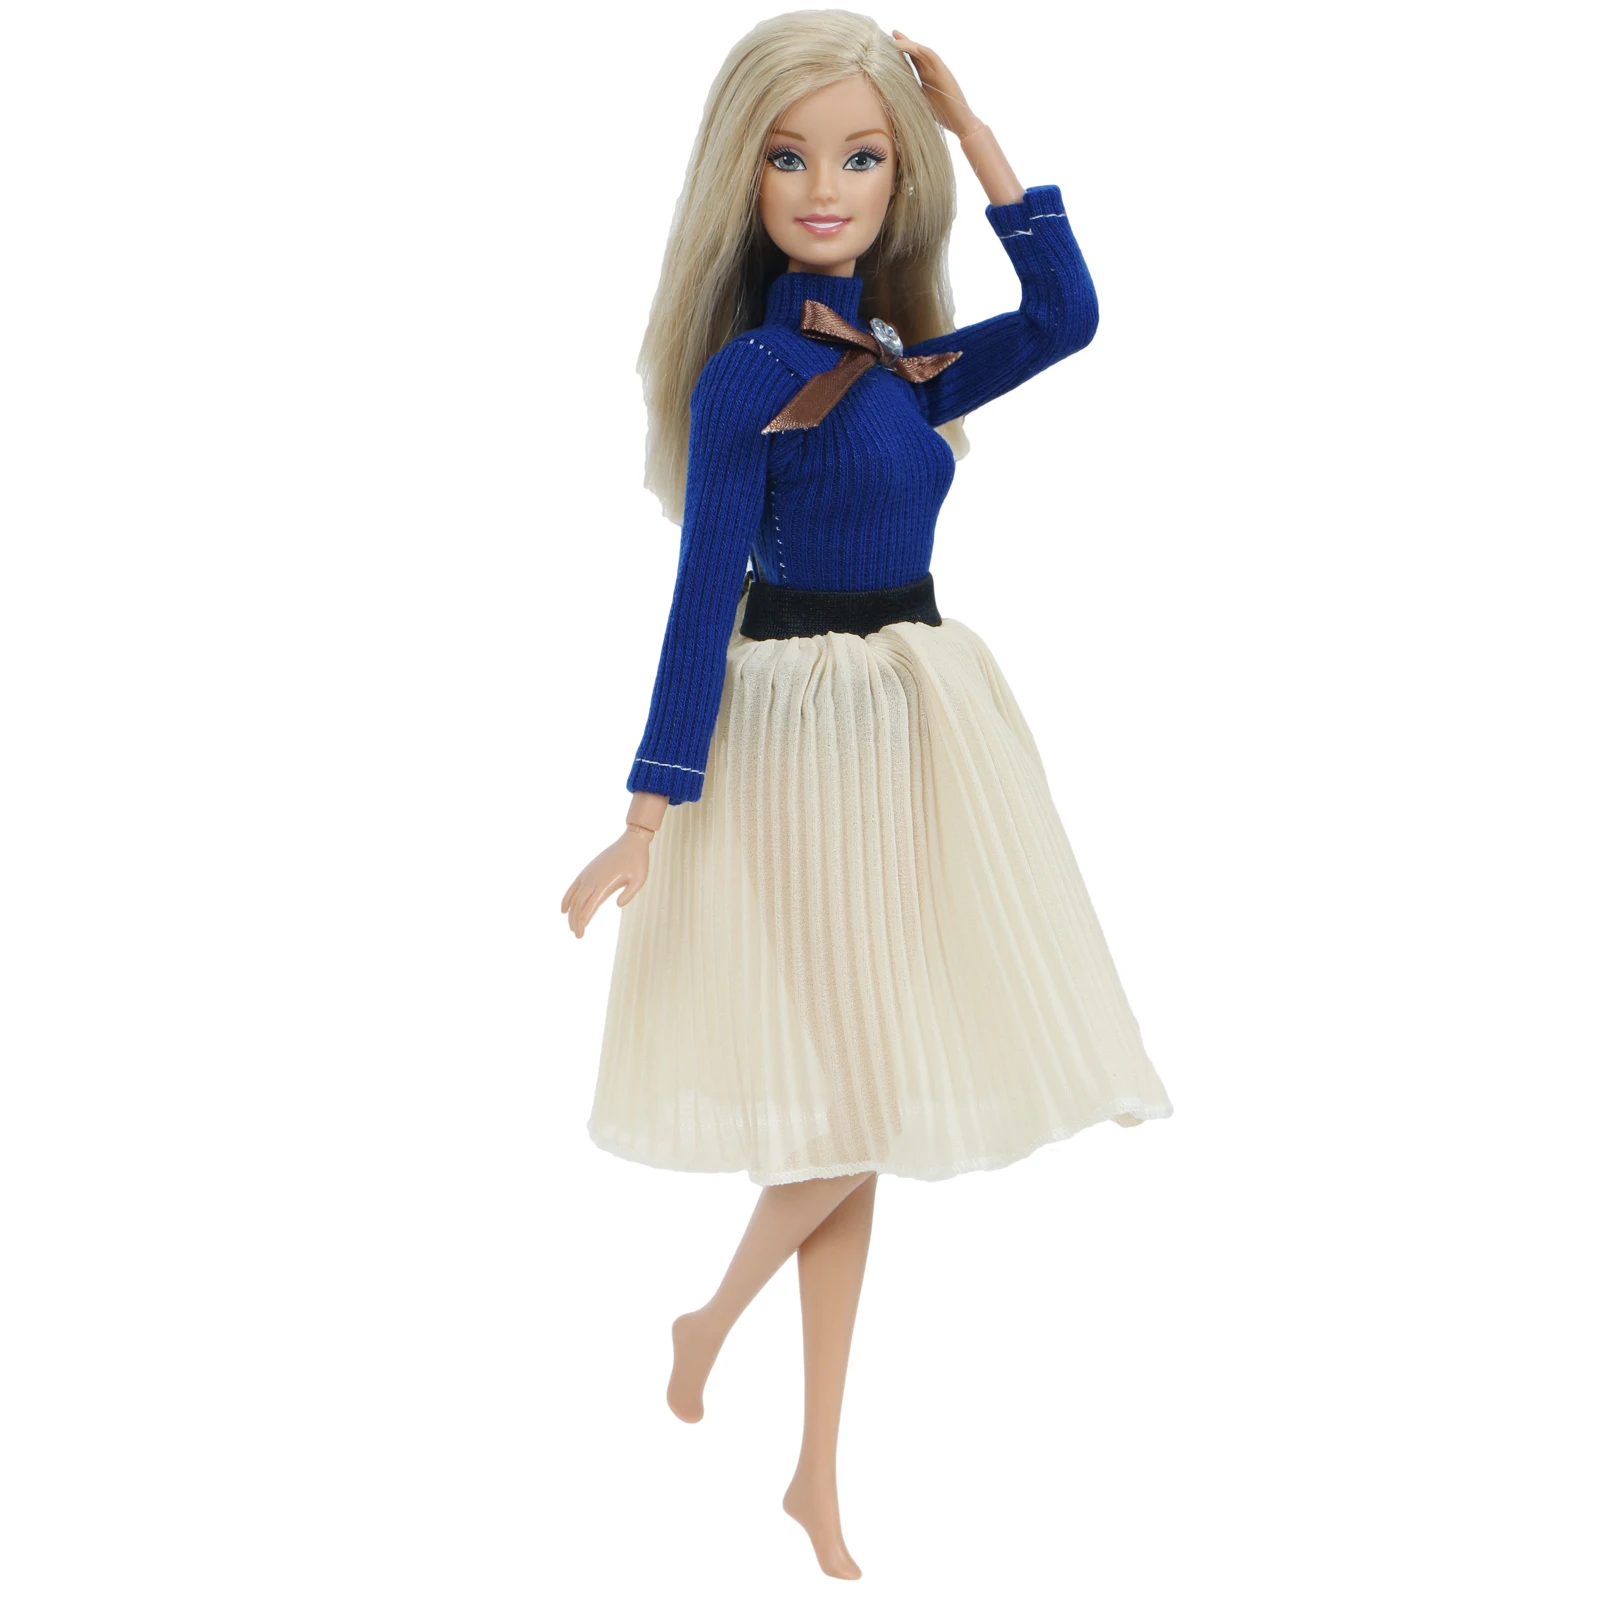 Модное Кукольное платье ручной работы для куклы Барби, синяя одежда для свиданий, блузка с длинными рукавами, плиссированная юбка, наряд, кукольная одежда, аксессуары